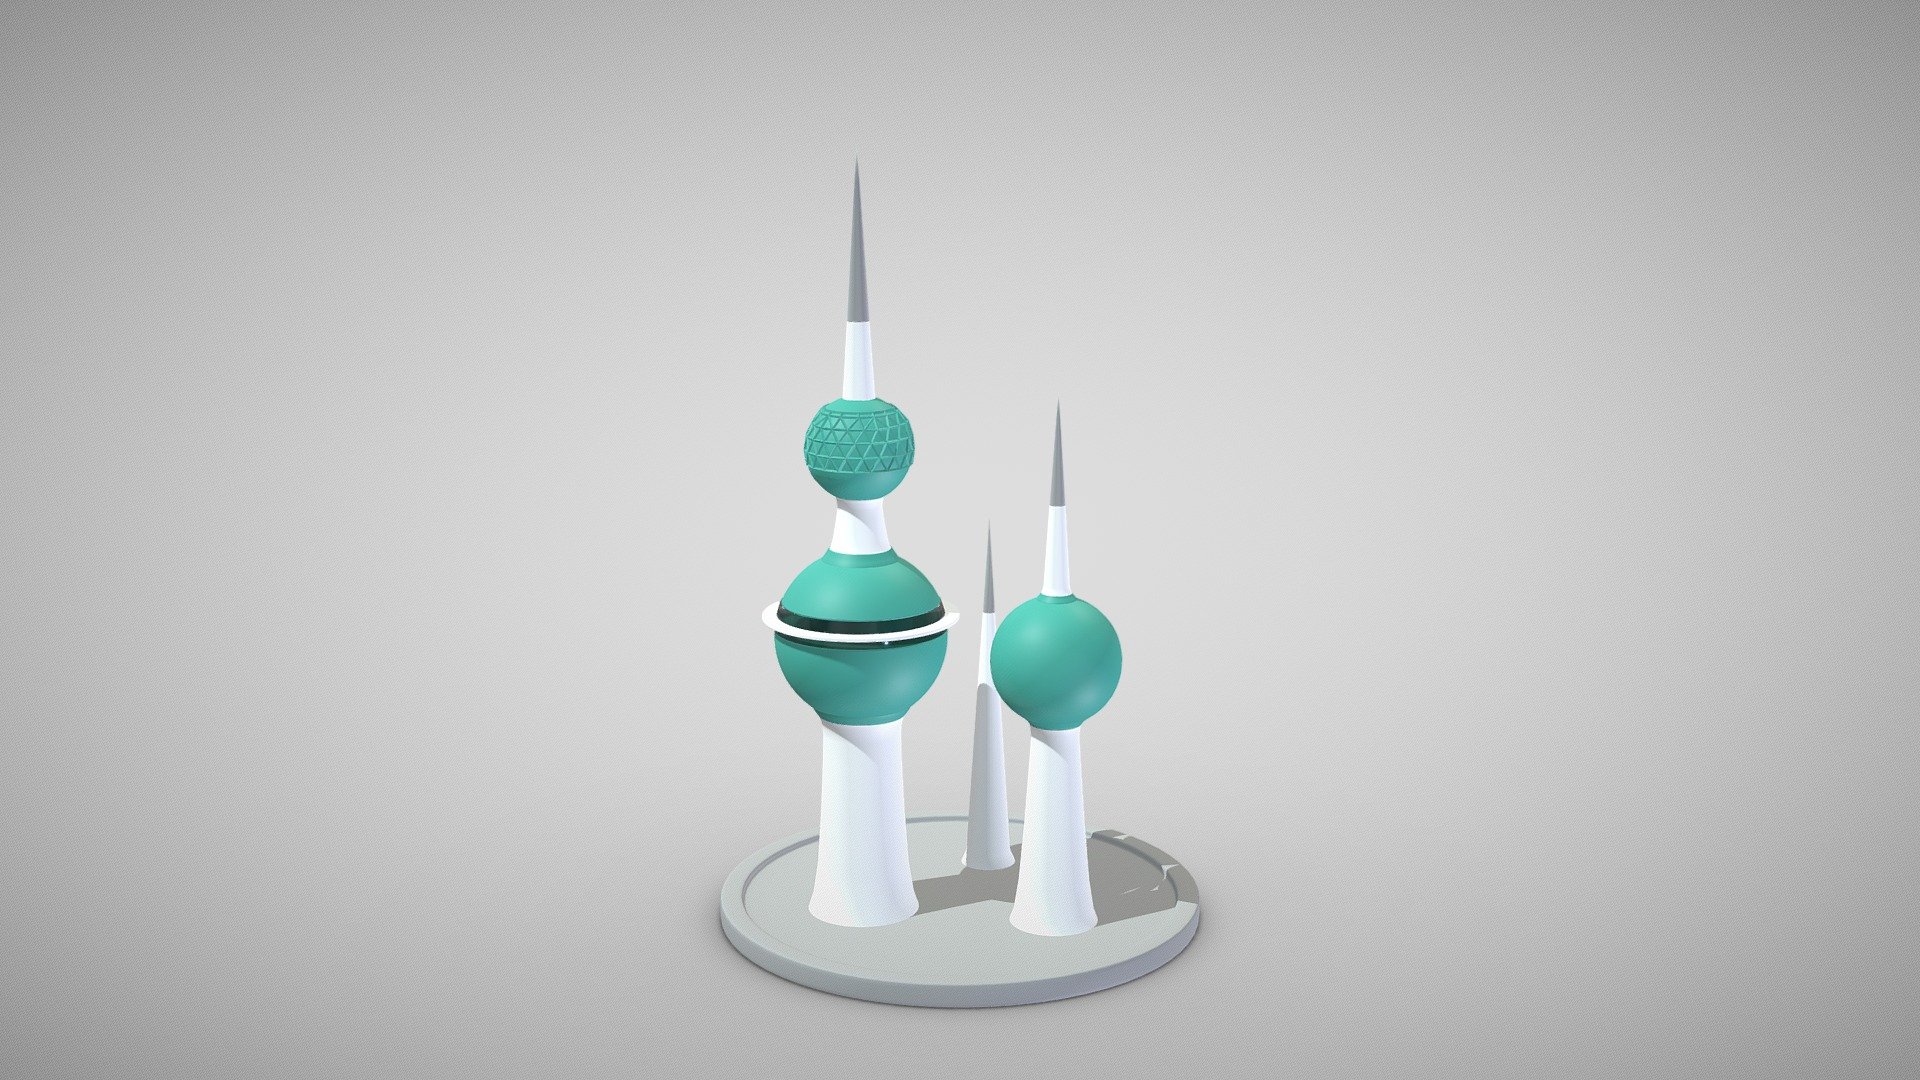 Kuwait towers - Kuwait towers - Buy Royalty Free 3D model by tkkjee ​🥀 (@tkkjee) 3d model